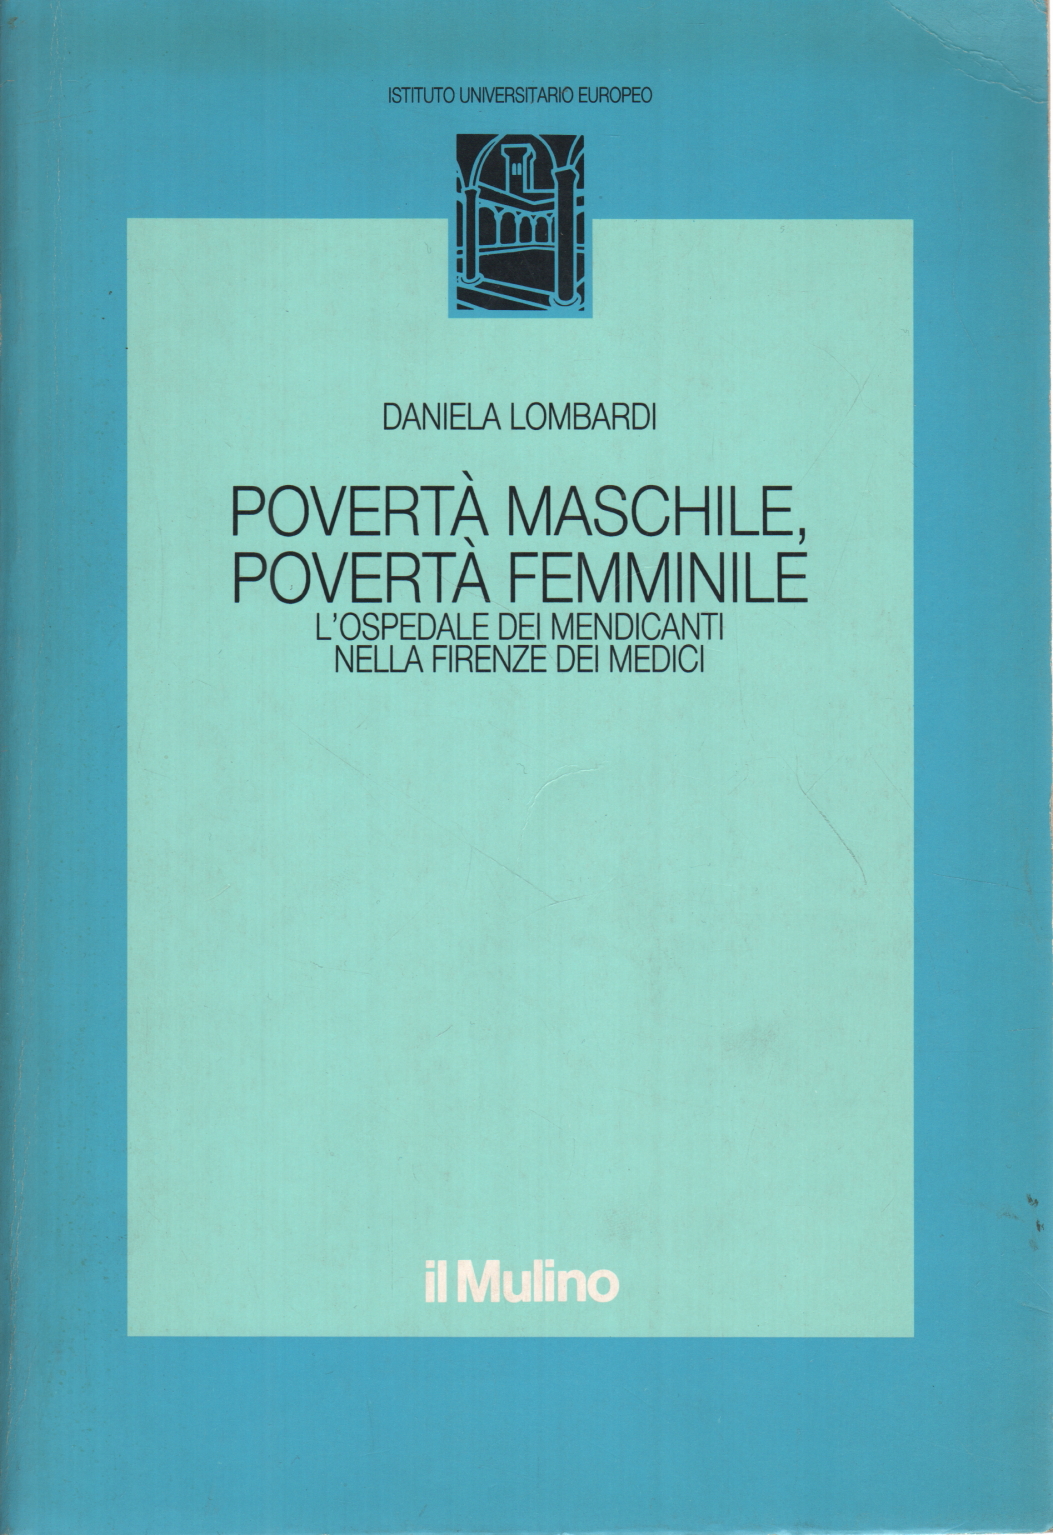 Povertà maschile povertà femminile, Daniela Lombardi